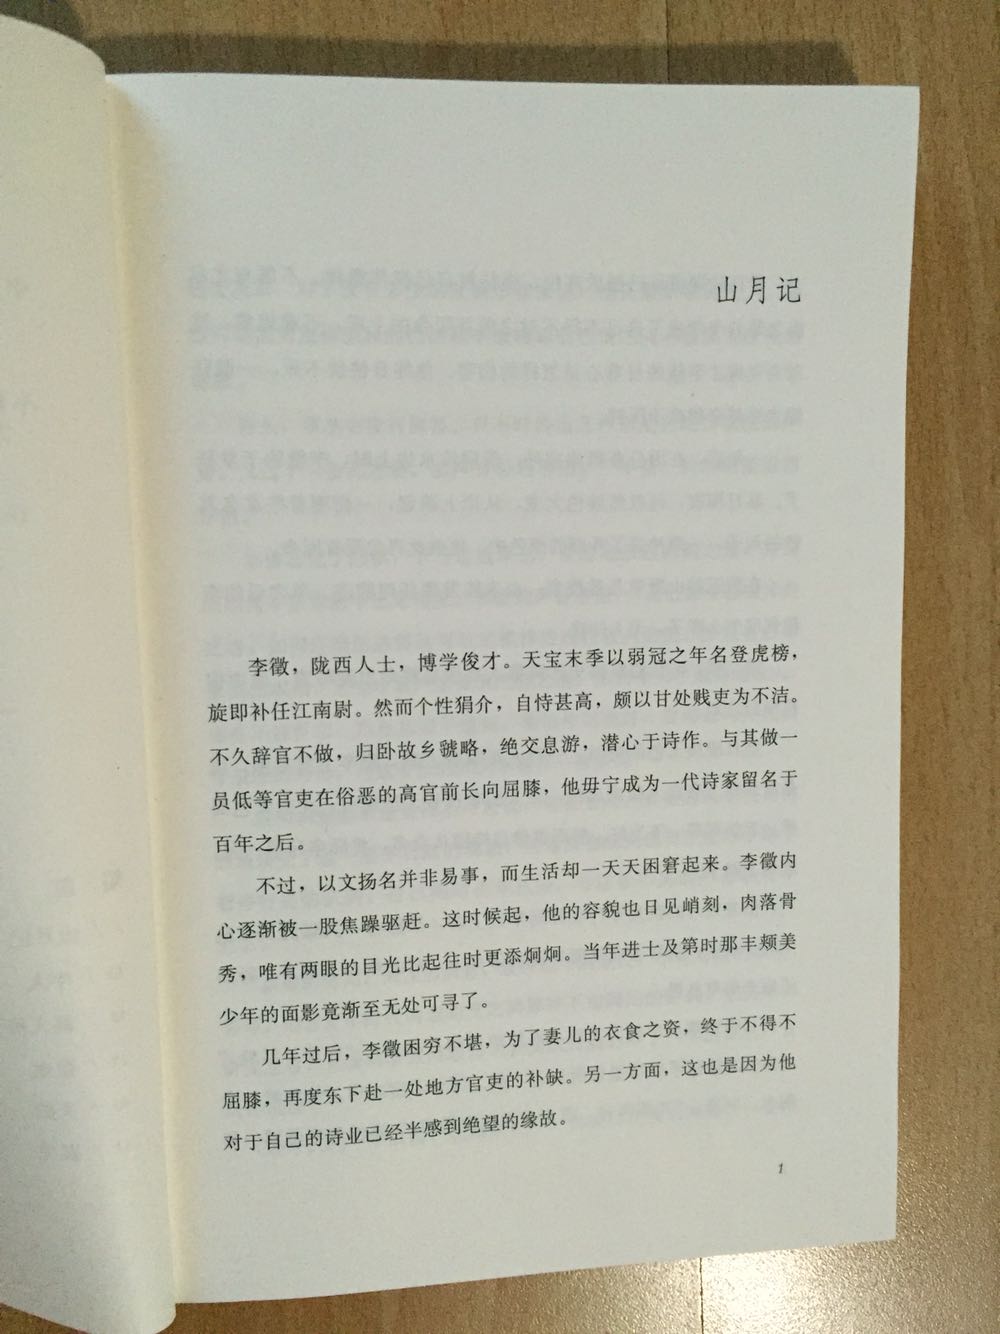 非常喜欢！！！中岛敦对于汉文学的研究十分深厚，也在文章中运用得淋漓尽致。此外他也着实博学多识，文笔优美。故事都十分精彩。